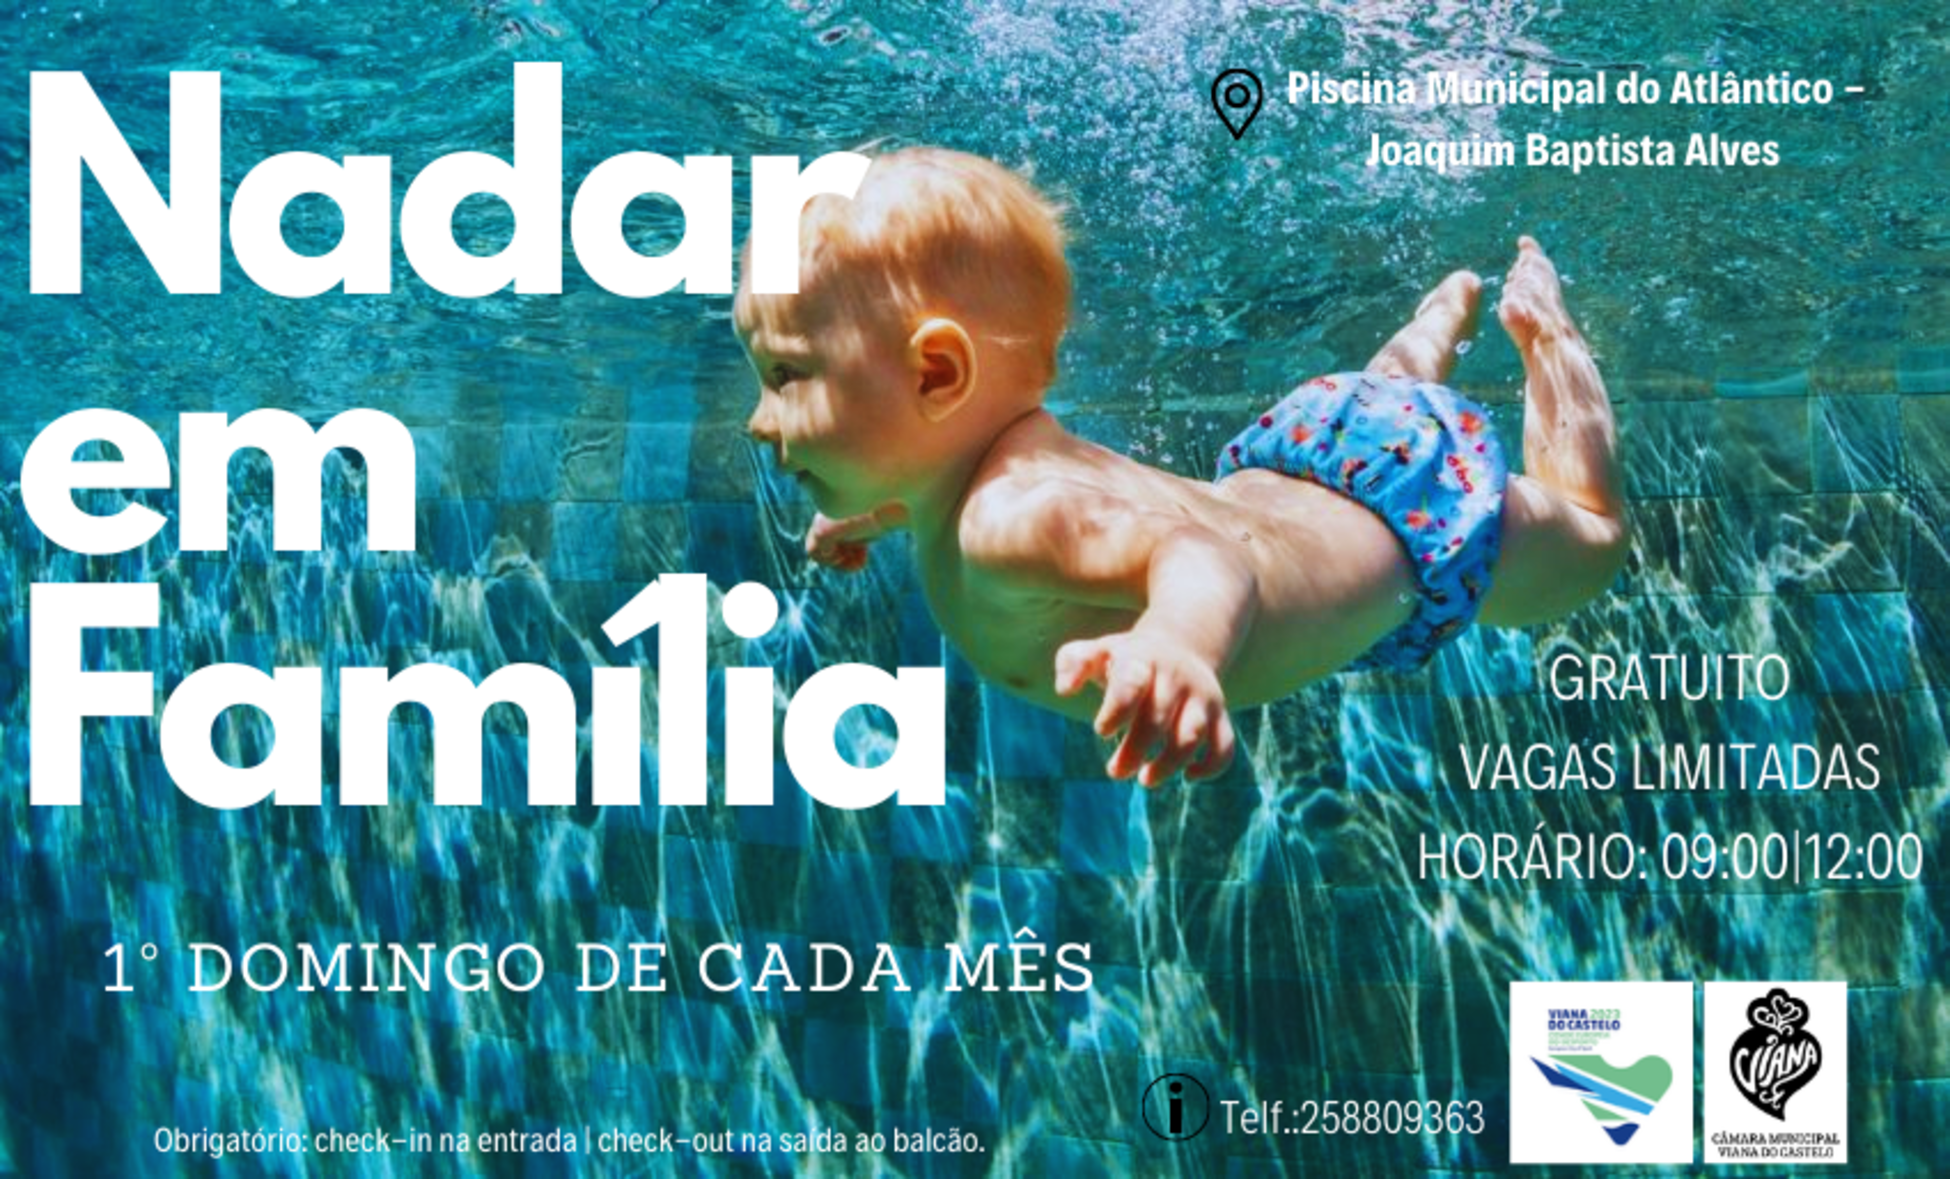 Piscina Municipal do Atlântico convida a “Nadar em Família” no primeiro domingo de cada mês